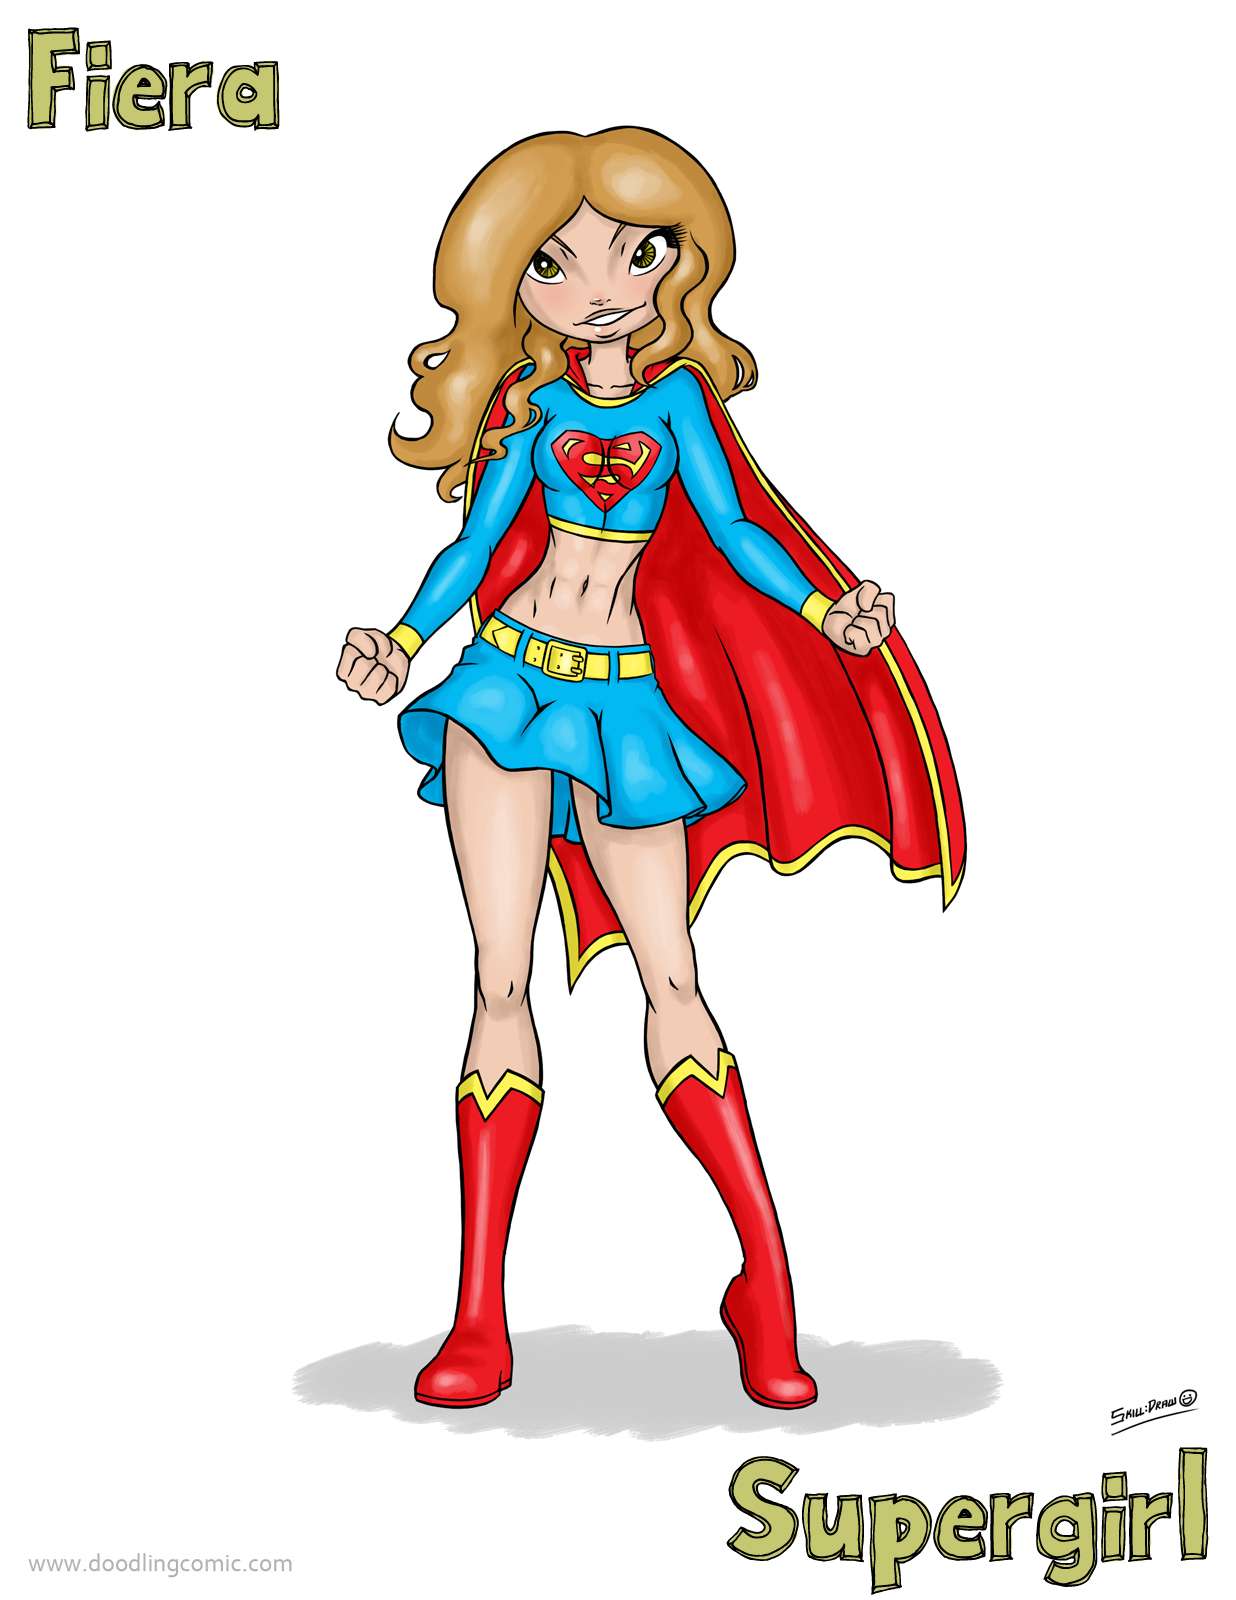 2011-12-03-fiera-supergirl.jpg